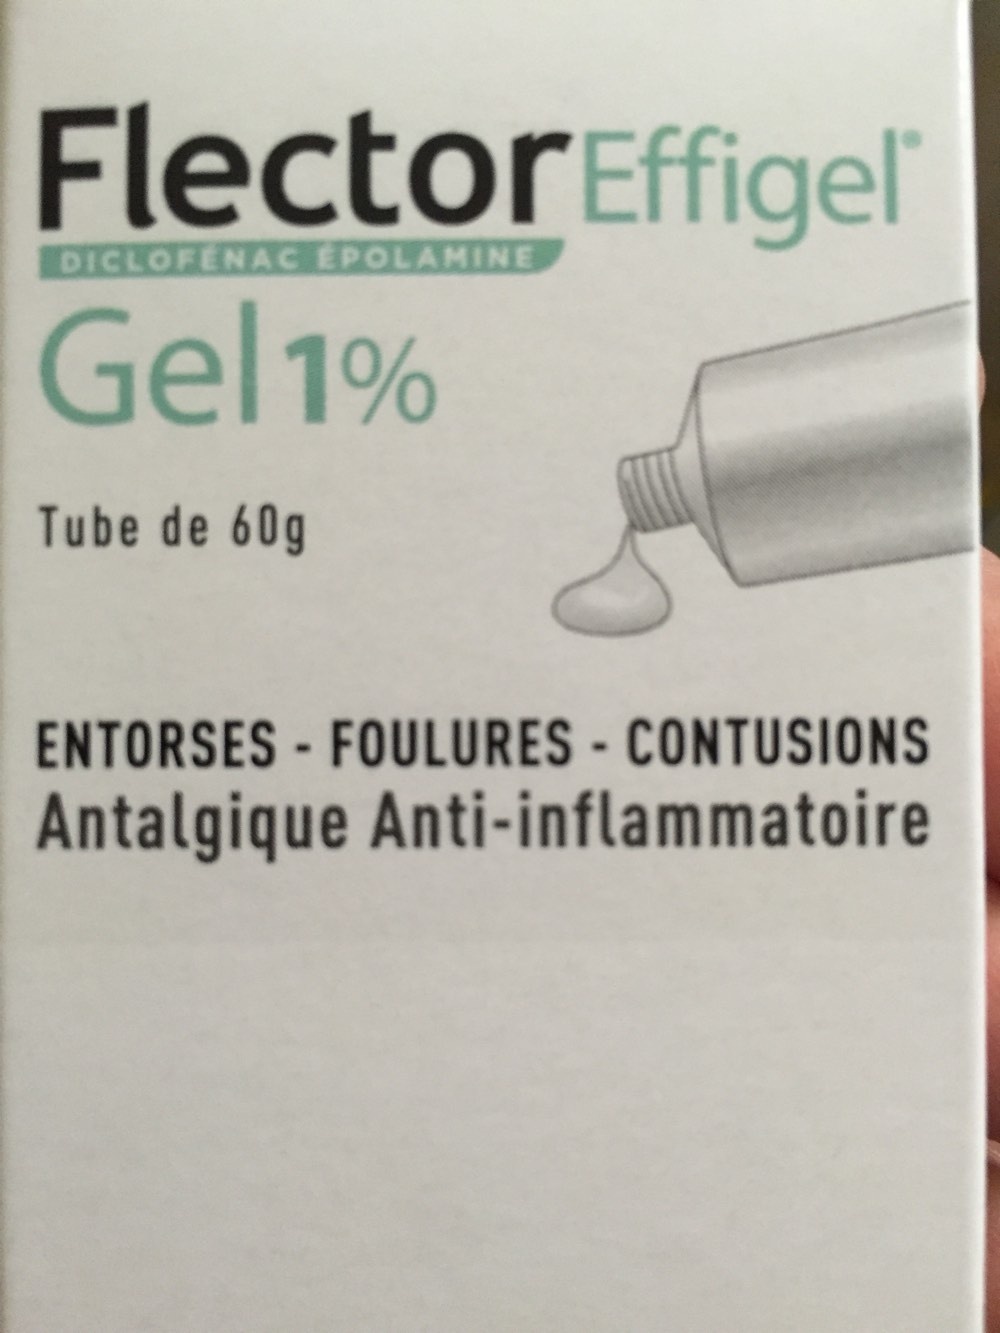 Flector Effigel - Produkt - fr